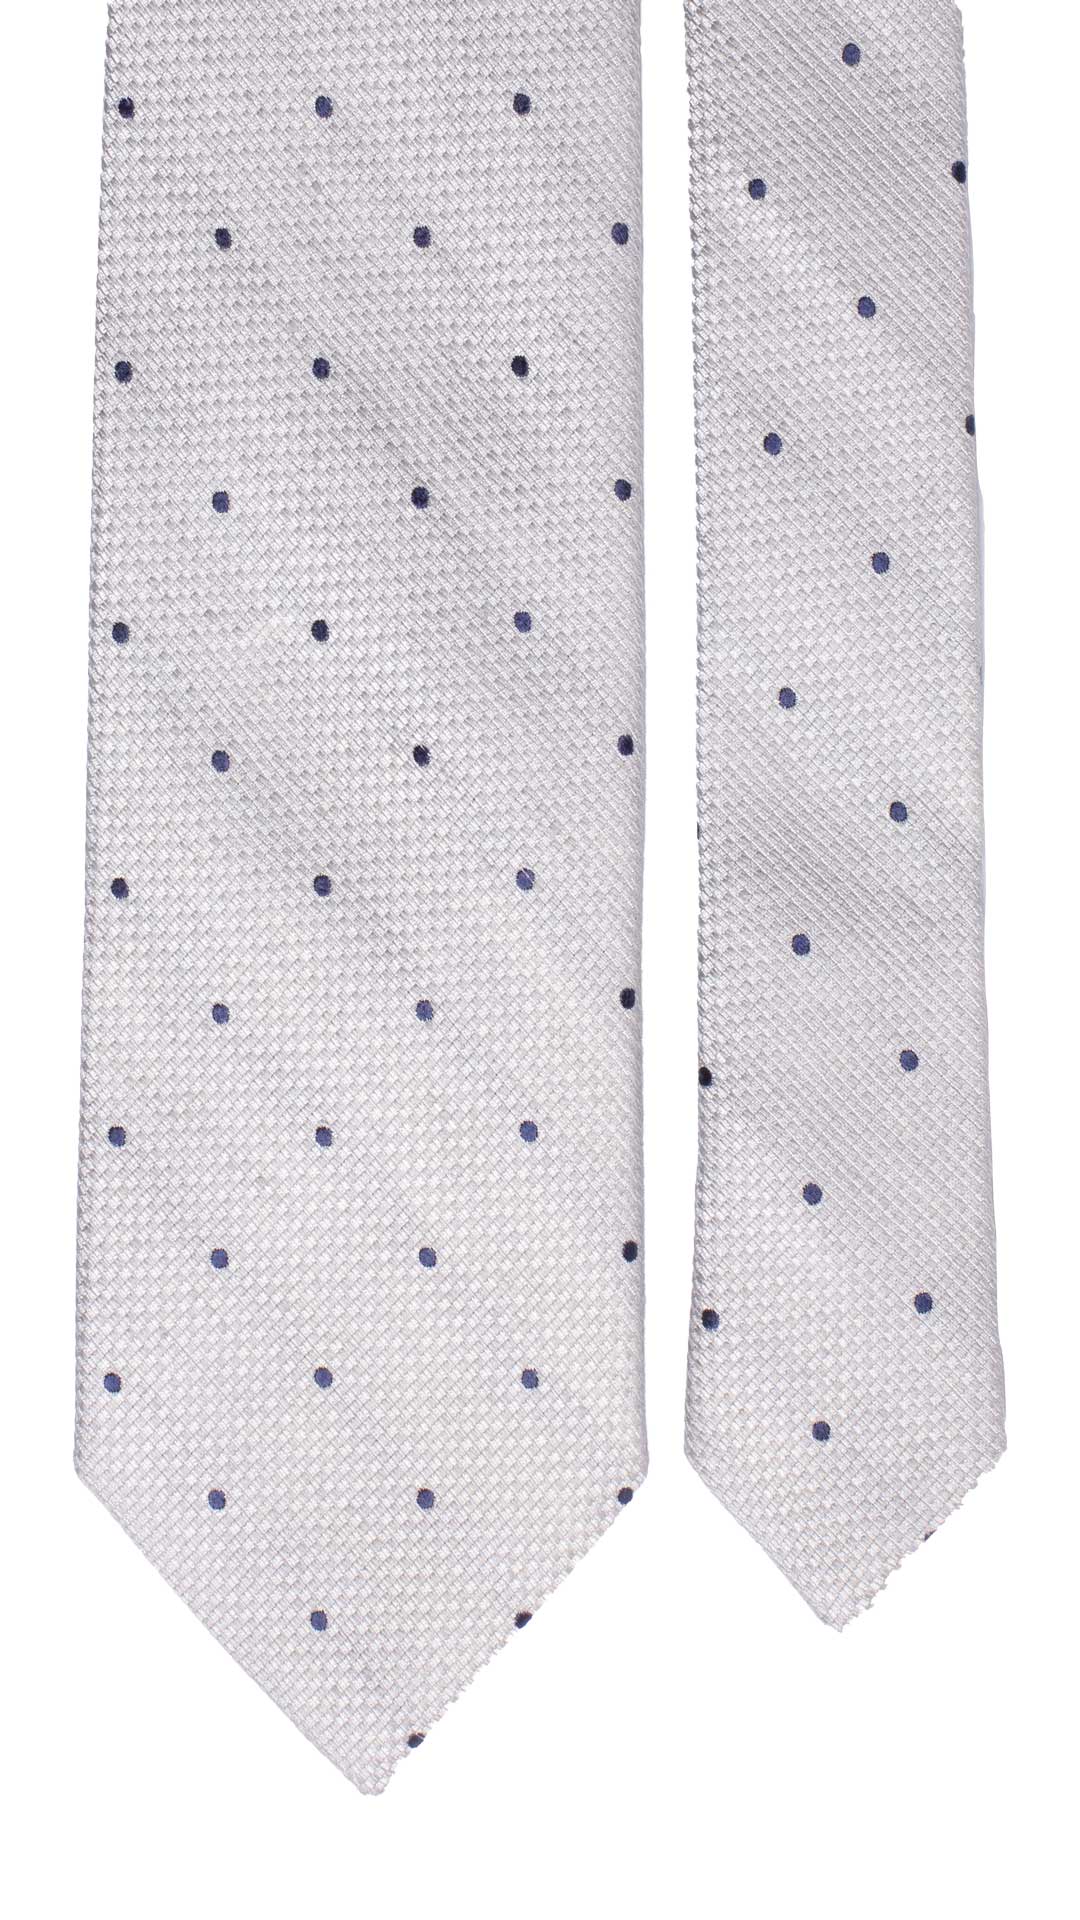 Cravatta da Cerimonia di Seta Grigio Argento Pois Blu Made in Italy Graffeo Cravatte Dettaglio